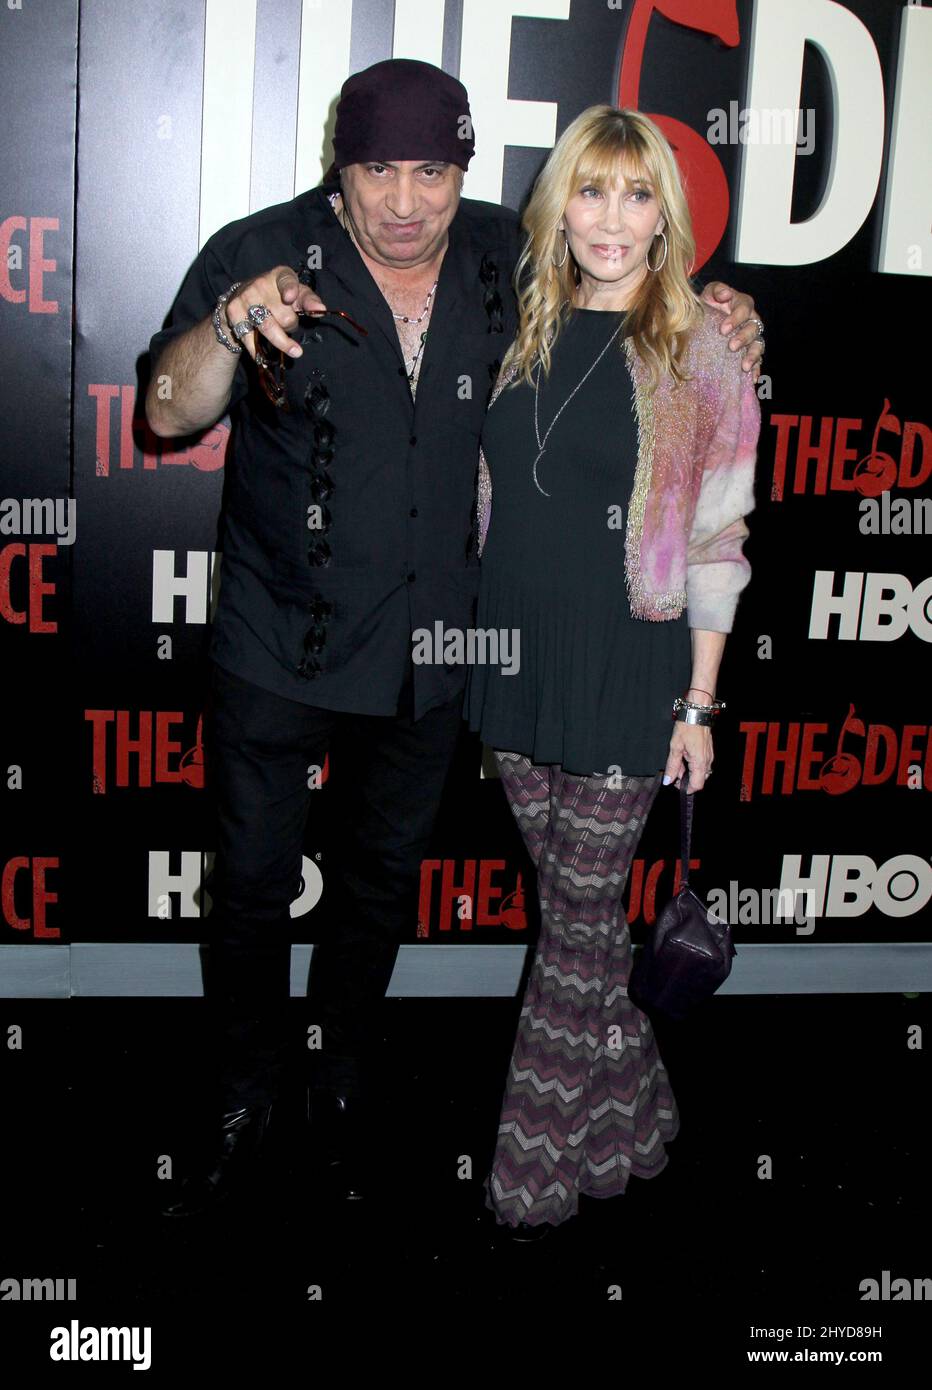 Steven Van Zandt & Maureen Van Zandt attending 'The Deuce' premiere held at the SVA Theater in New York, USA Stock Photo